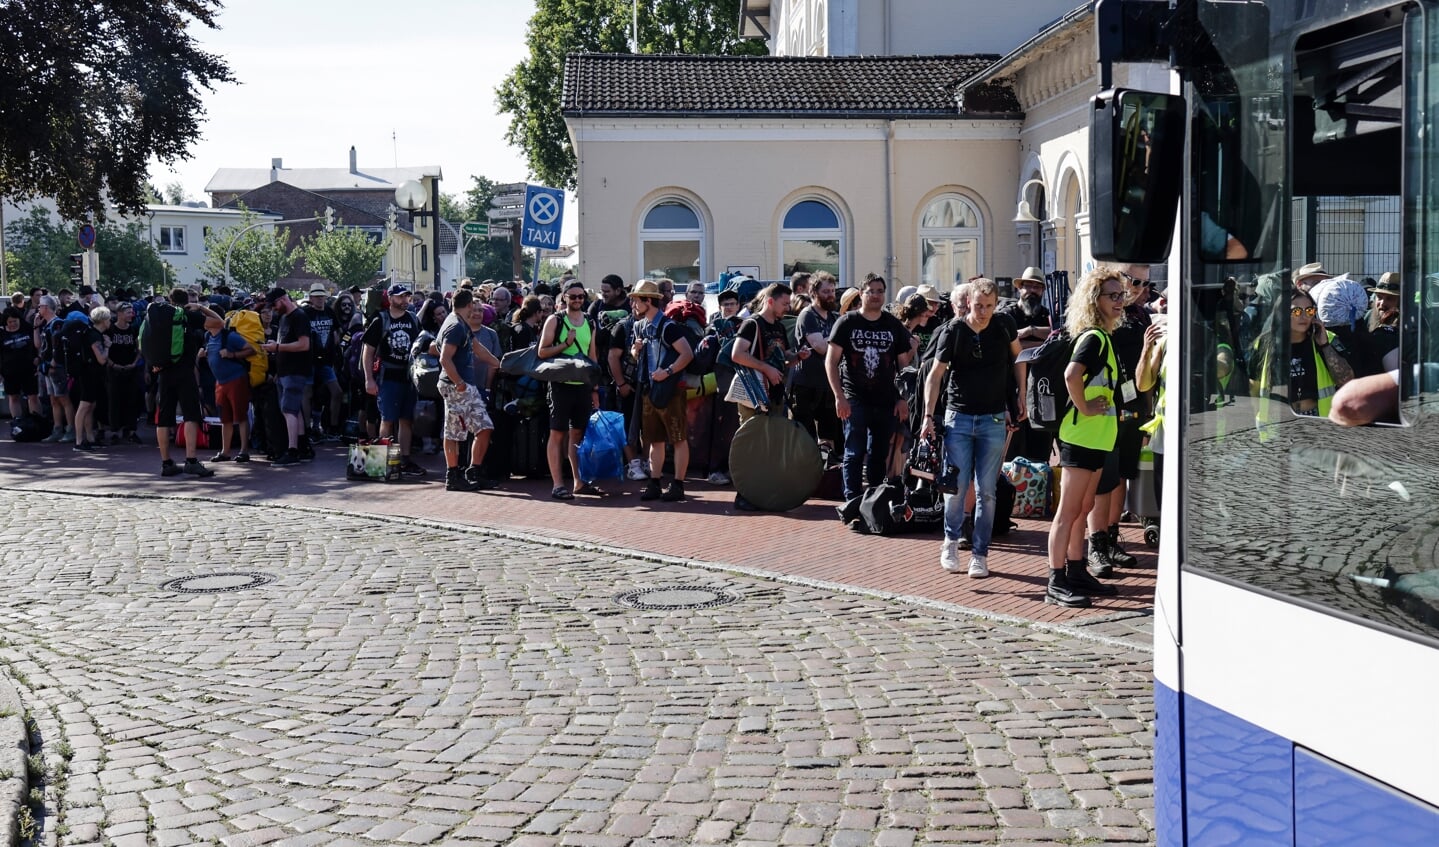 Festival-Besucher warten am Wacken Bahnhof auf das Einsteigen in die Shuttle-Busse. Nach pandemiebedingter Pause gibt es vom 4. bis 6. August wieder ein großes Heavy-Metal-Festival in Schleswig-Holstein. Fotos: